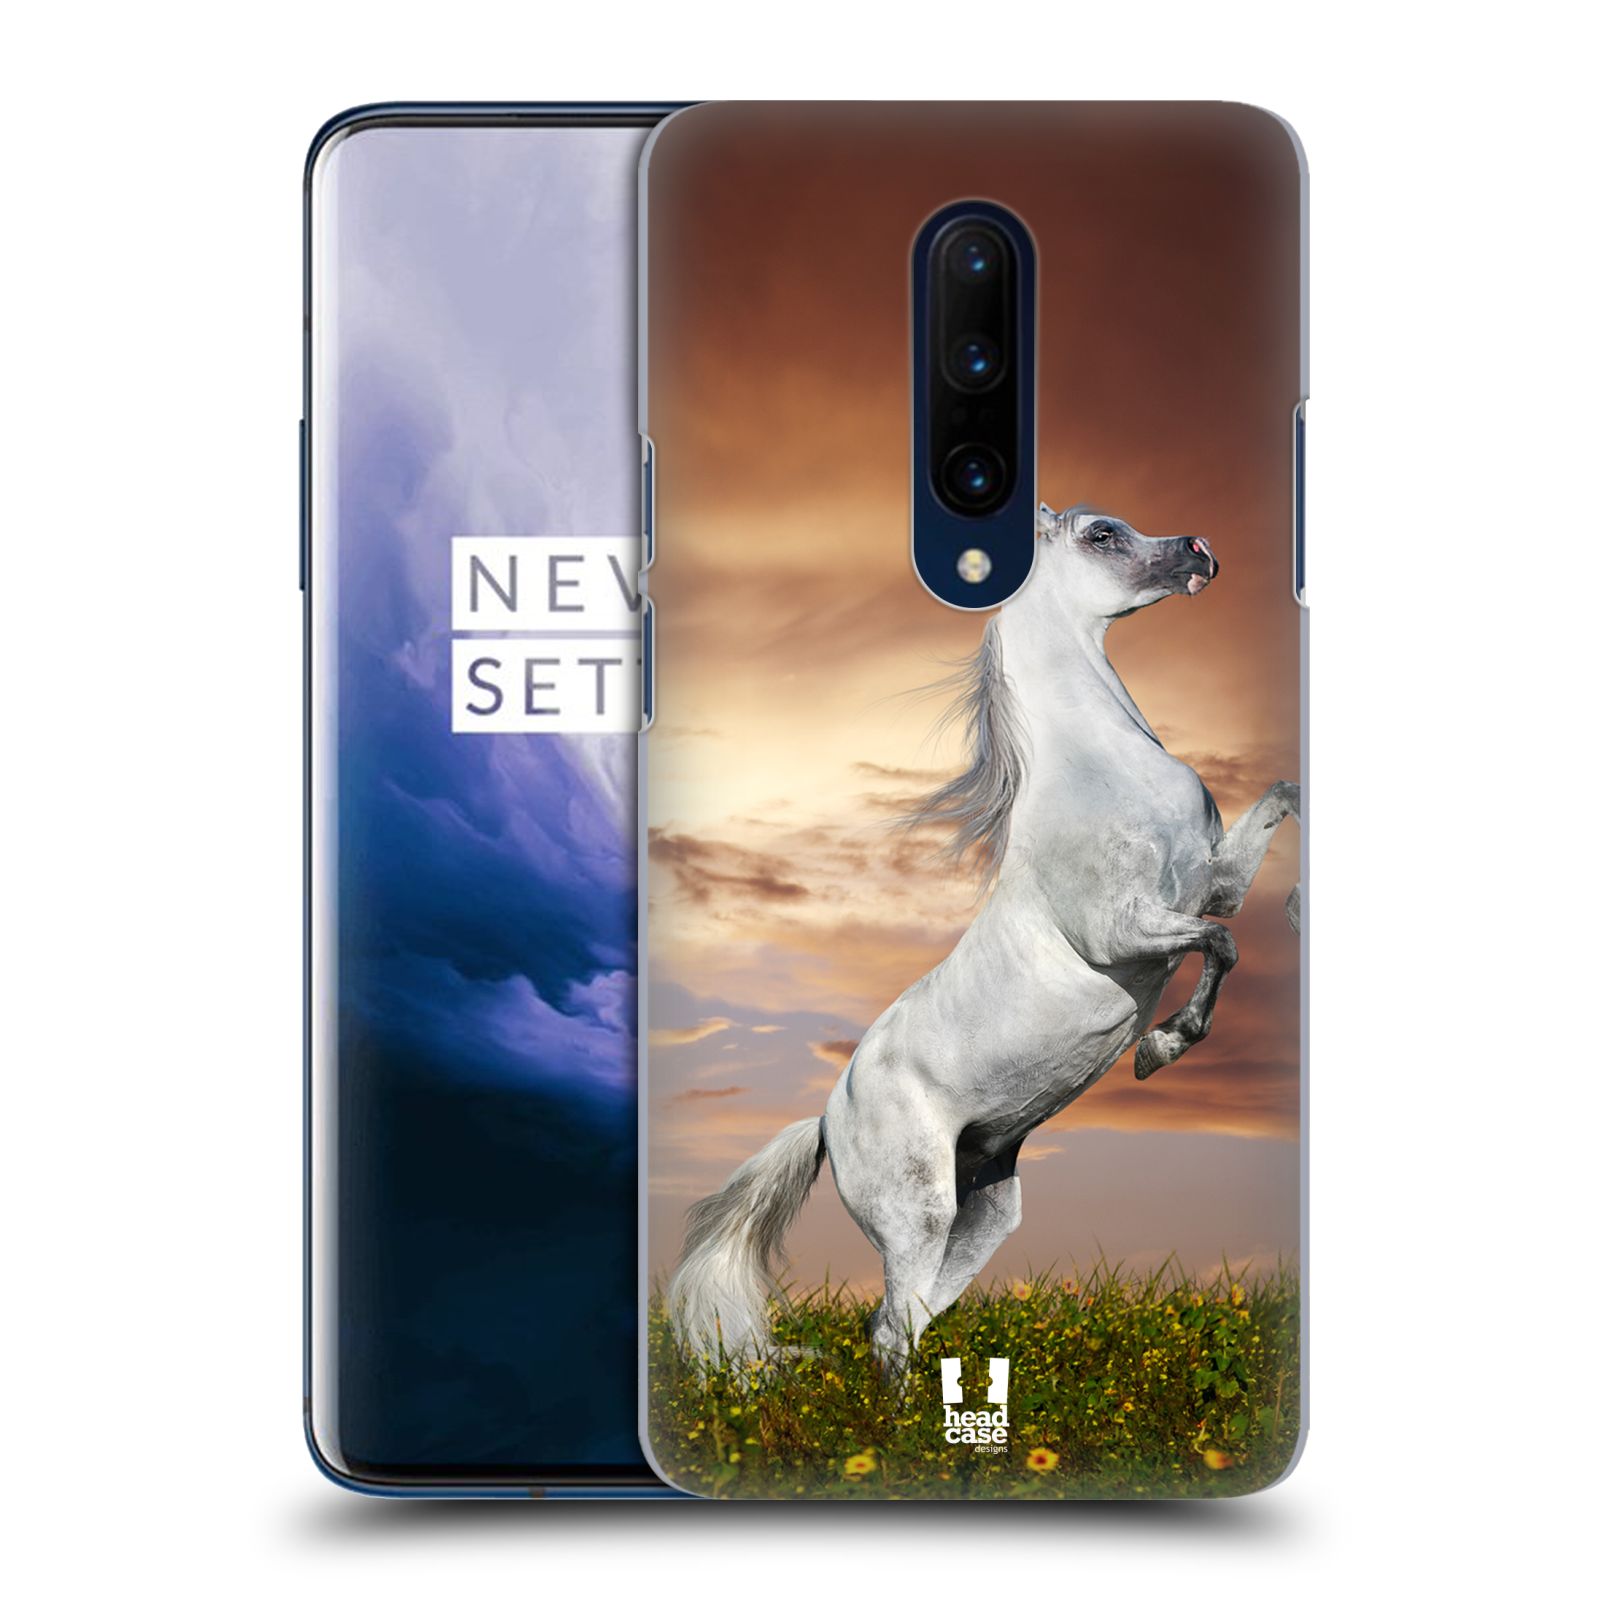 Zadní obal pro mobil OnePlus 7 PRO - HEAD CASE - Svět zvířat divoký kůň